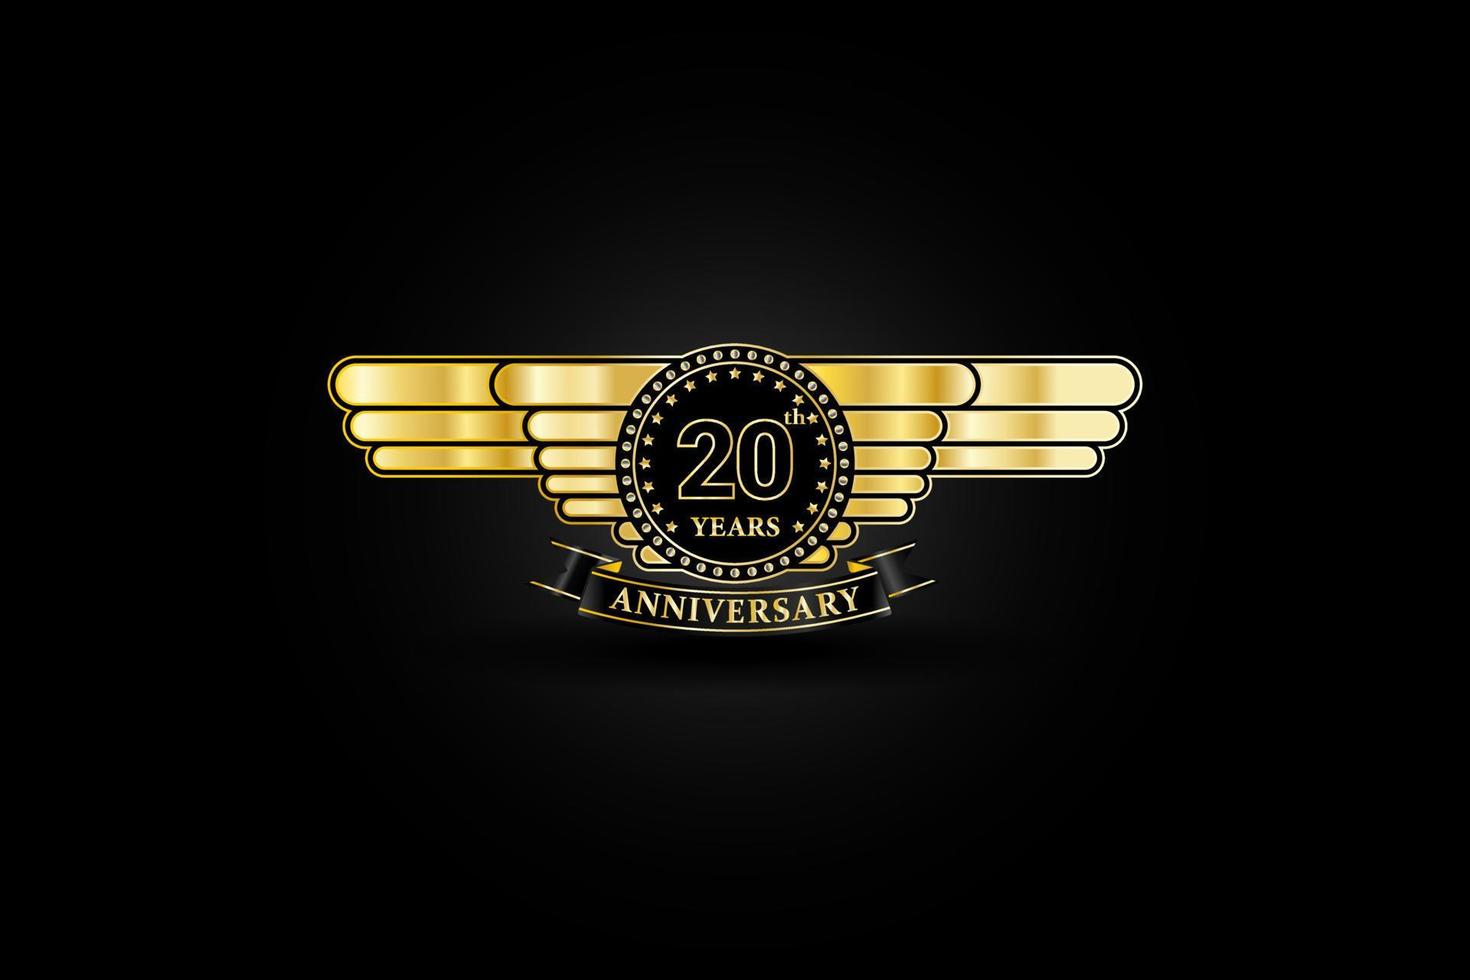 Logo or doré du 20e anniversaire avec aile dorée et ruban isolé sur fond noir, création vectorielle pour la célébration. vecteur